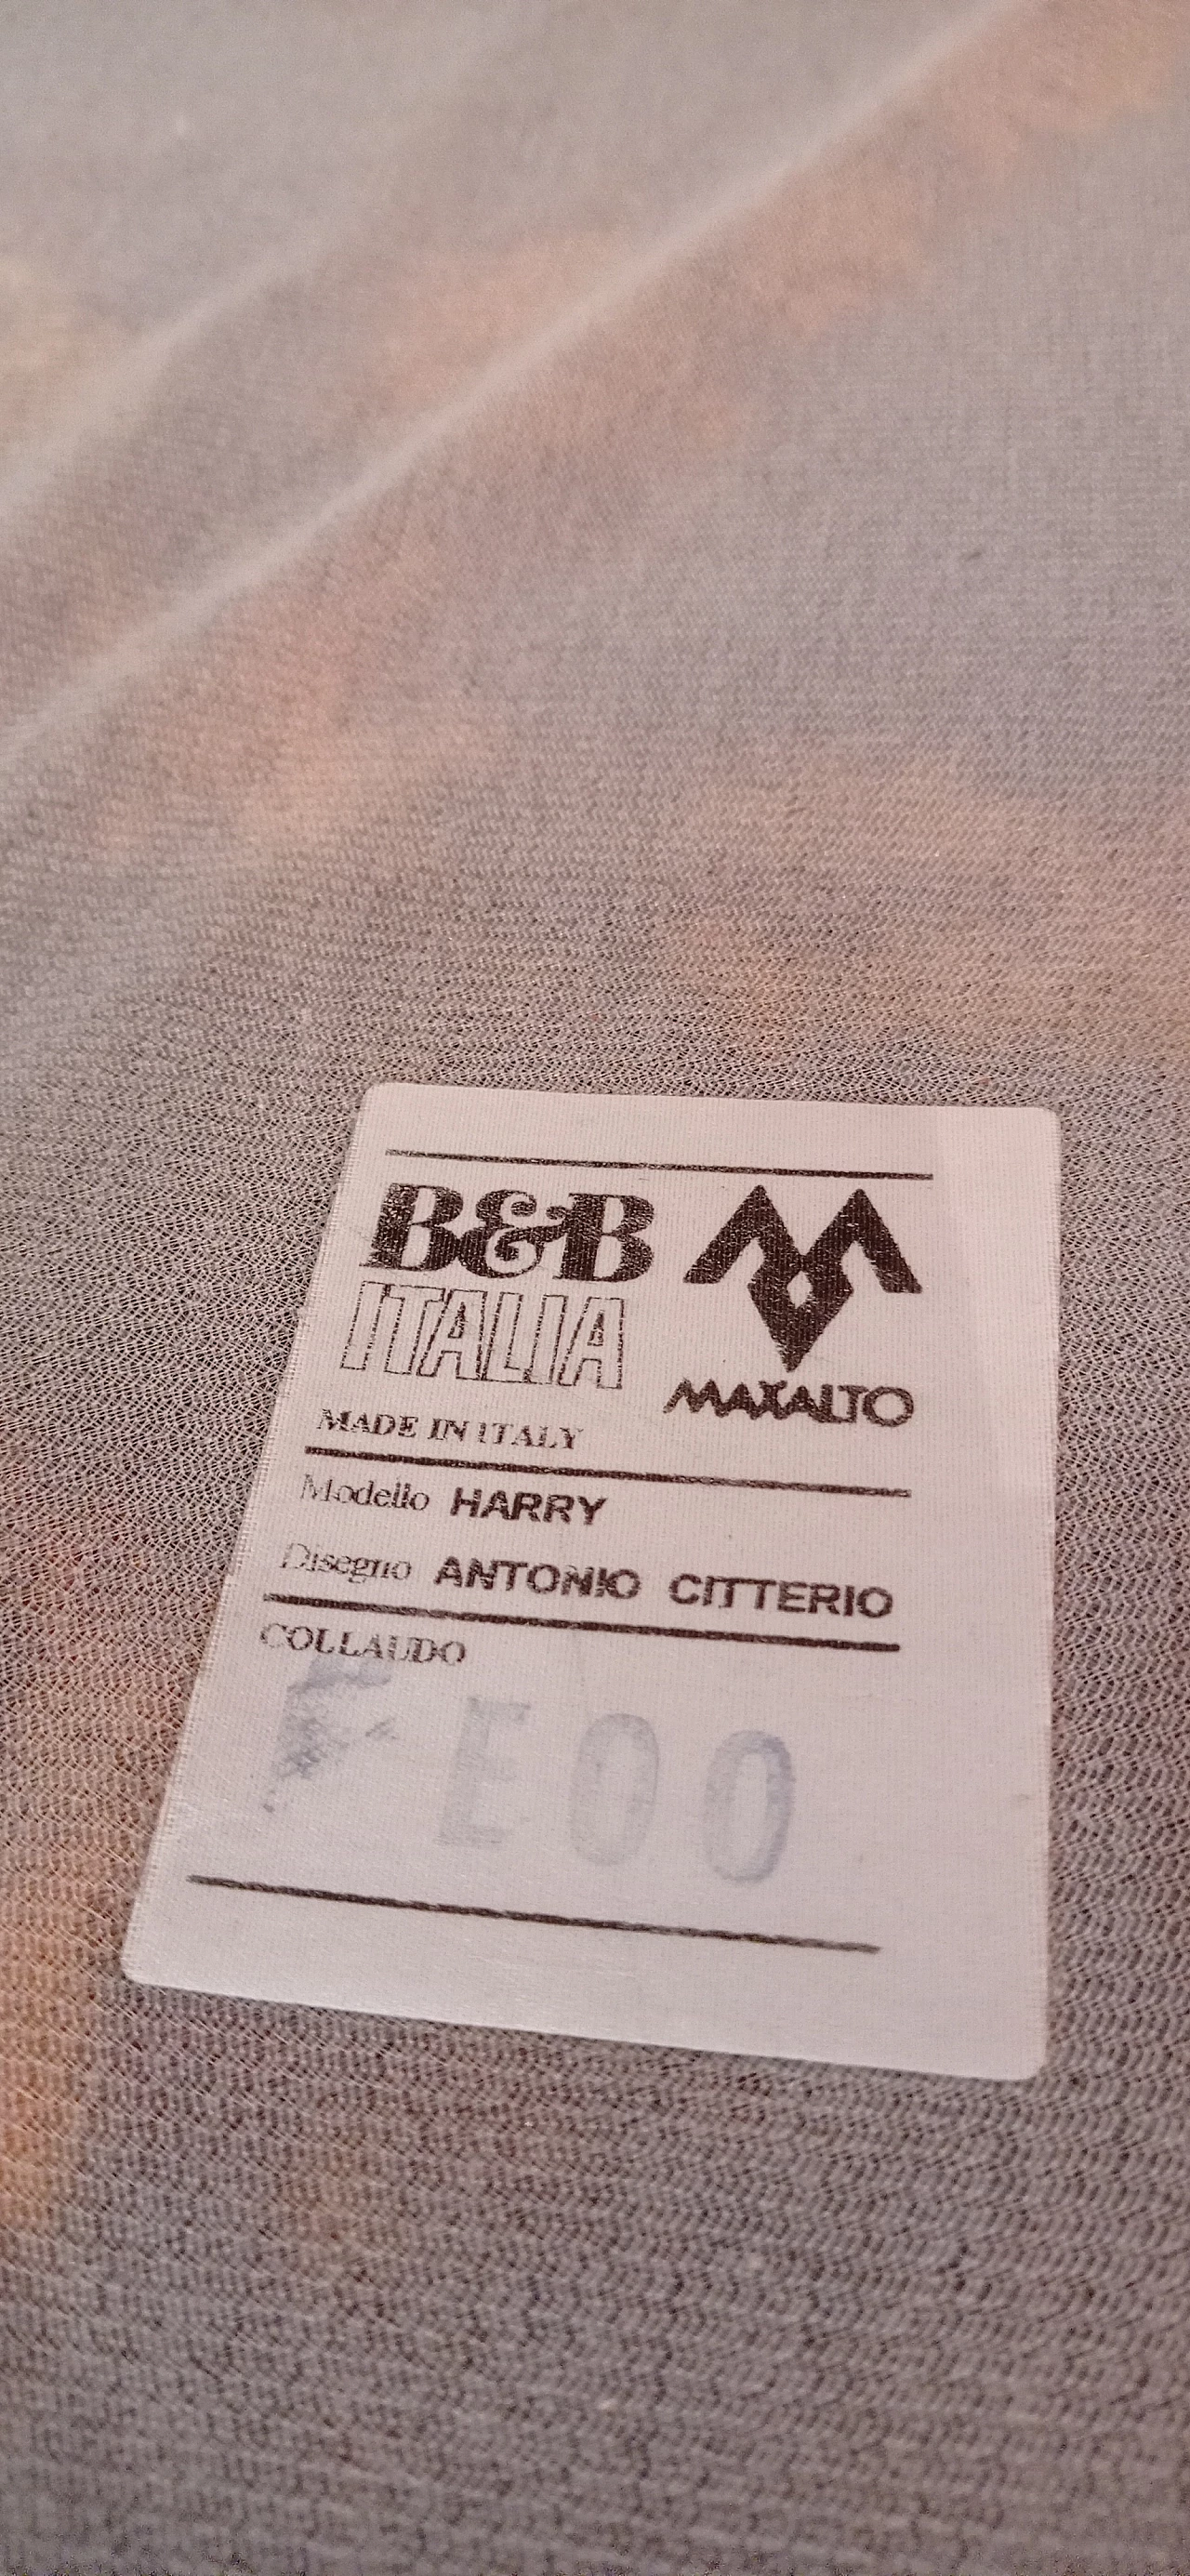 Divano Harry di Antonio Citterio per B&& Italia e Maxalto, anni '90 207